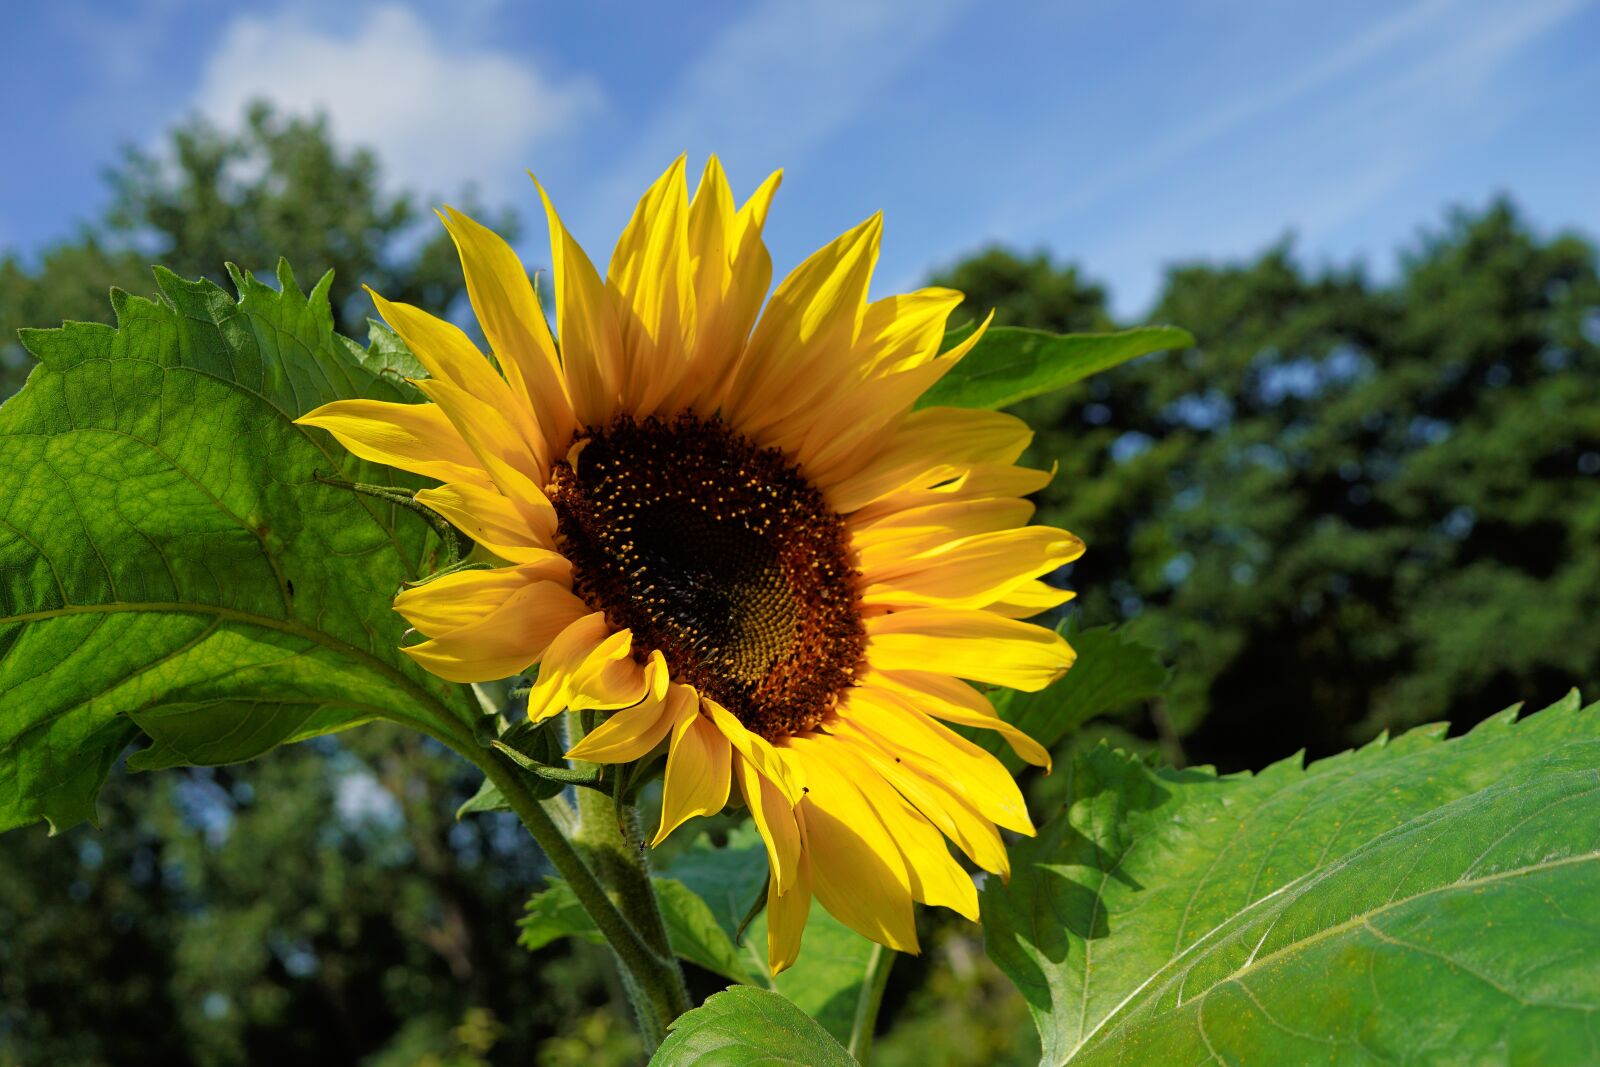 Sony DT 30mm F2.8 Macro SAM sample photo. Garden, flower, sunflower photography